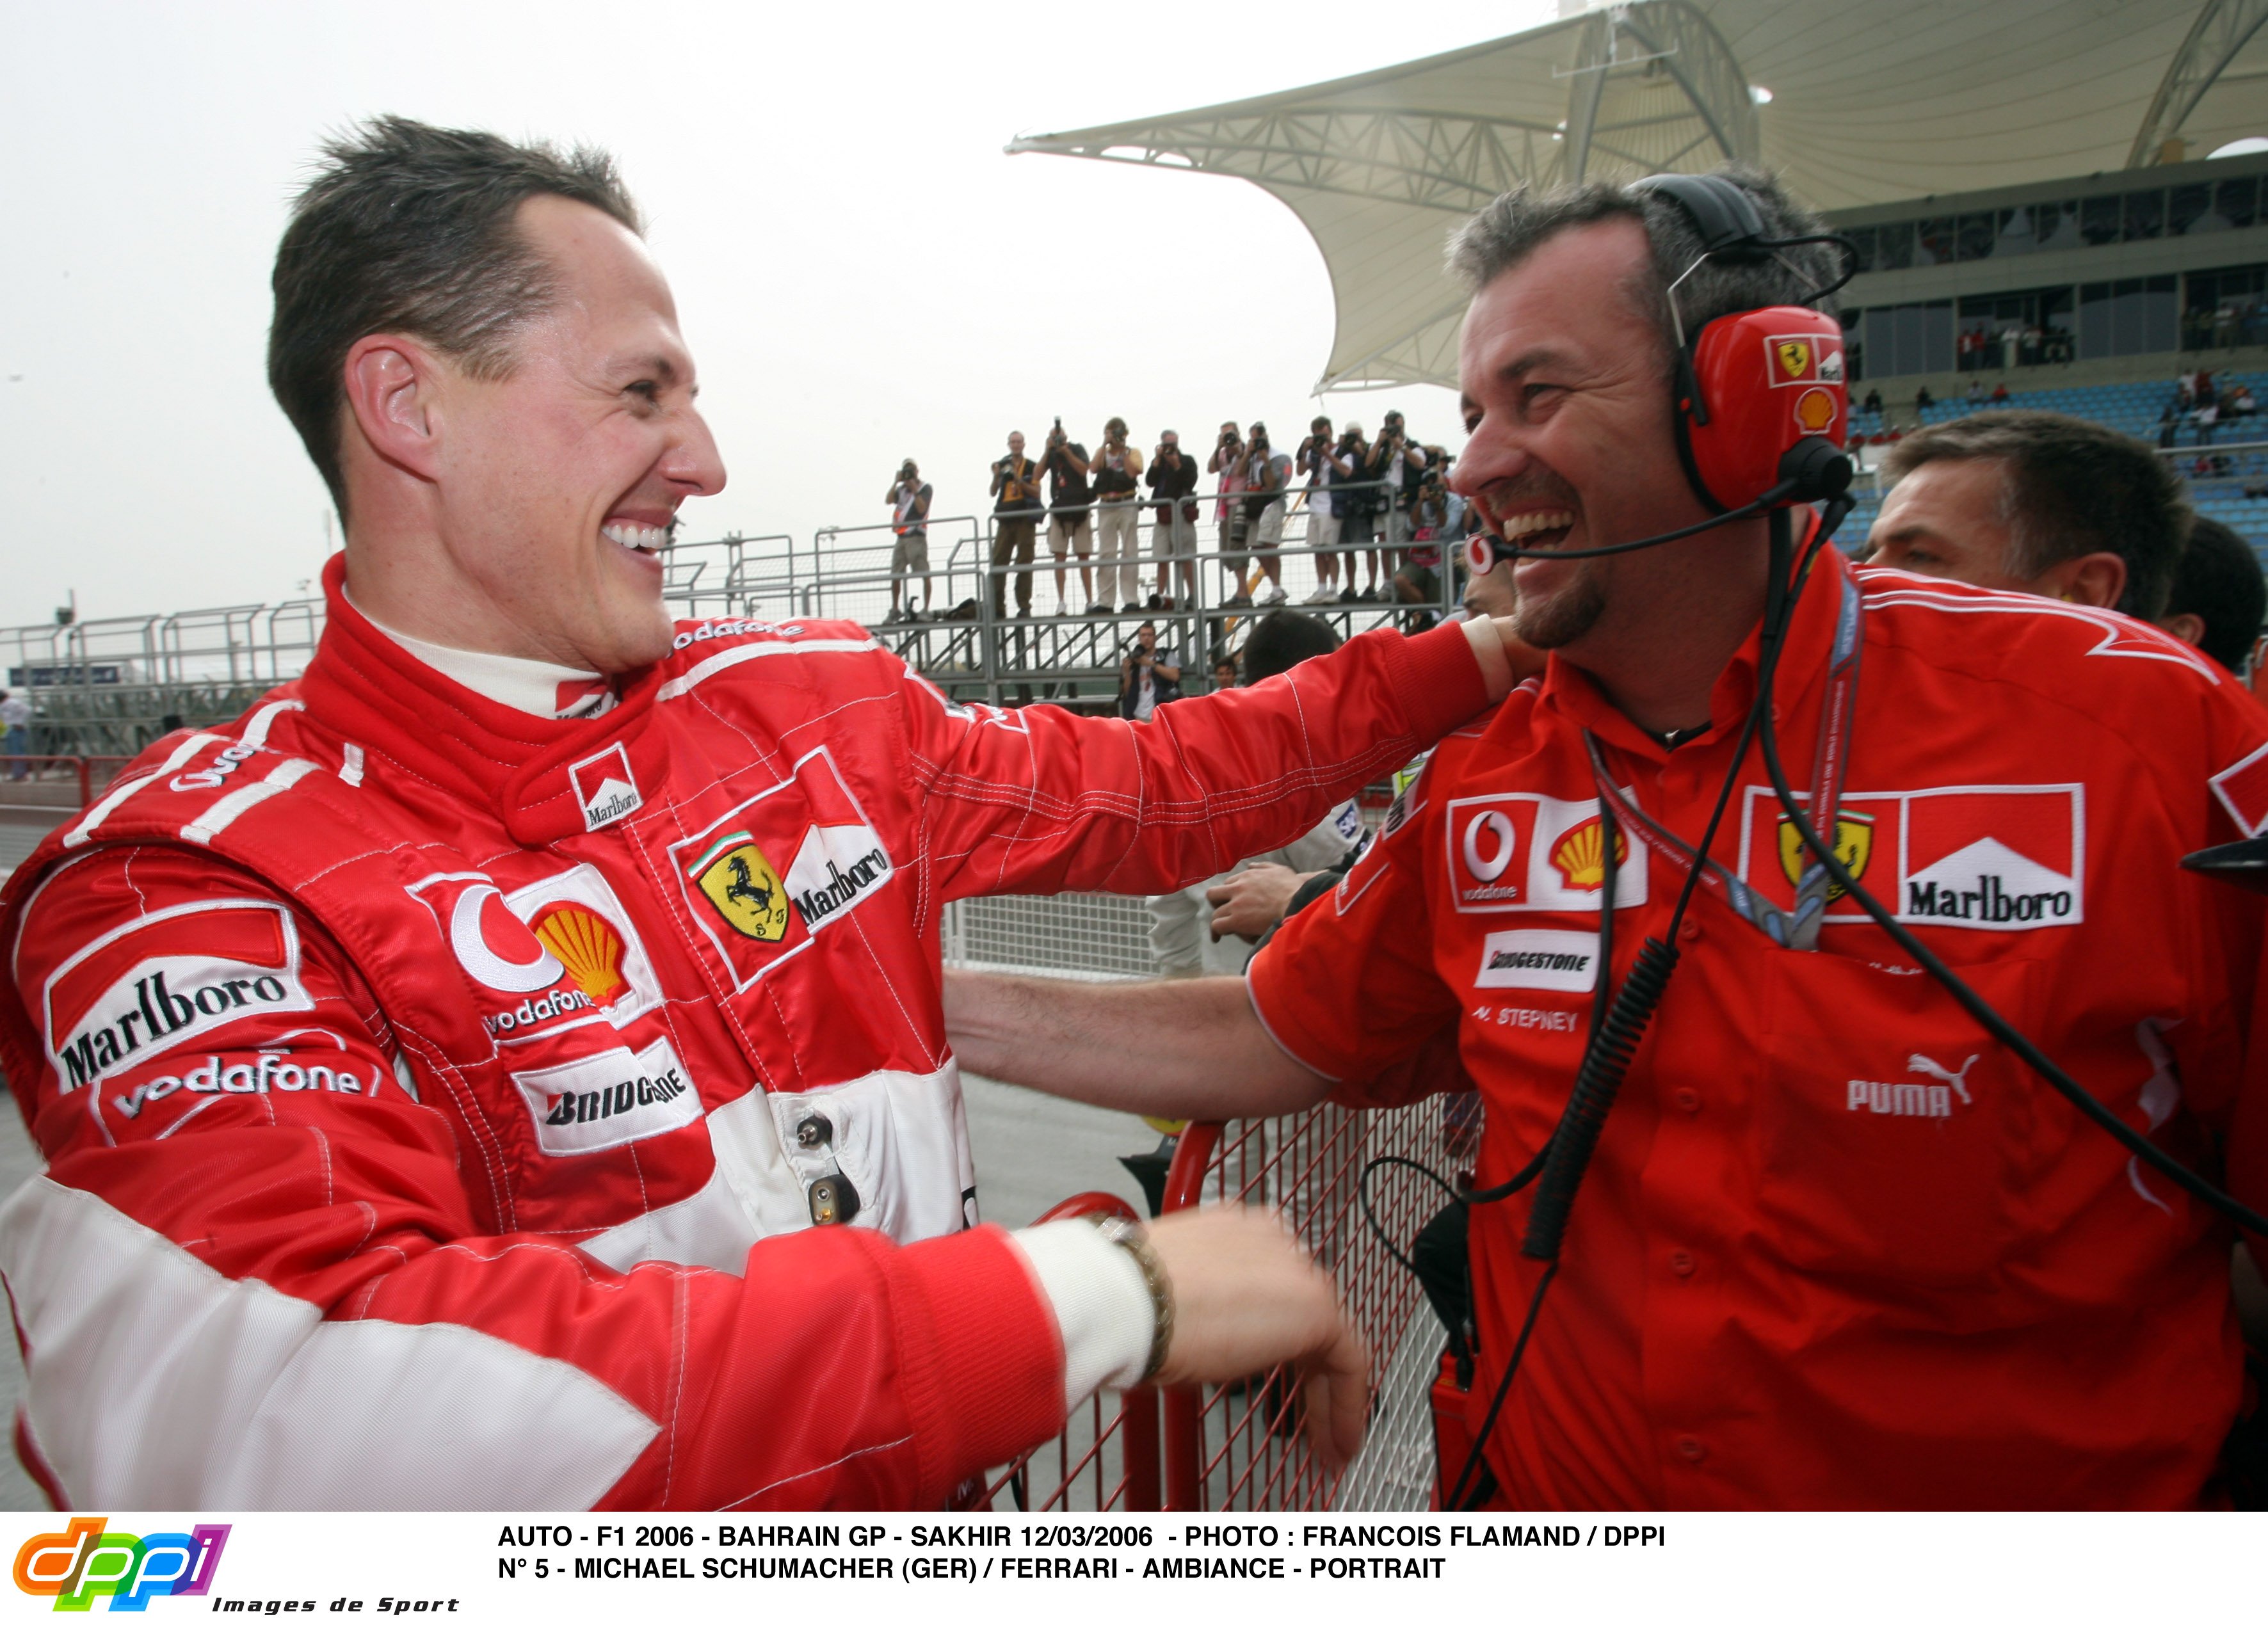 Michael Schumacher sigue luchando por su vida: foto de su hijo Mick